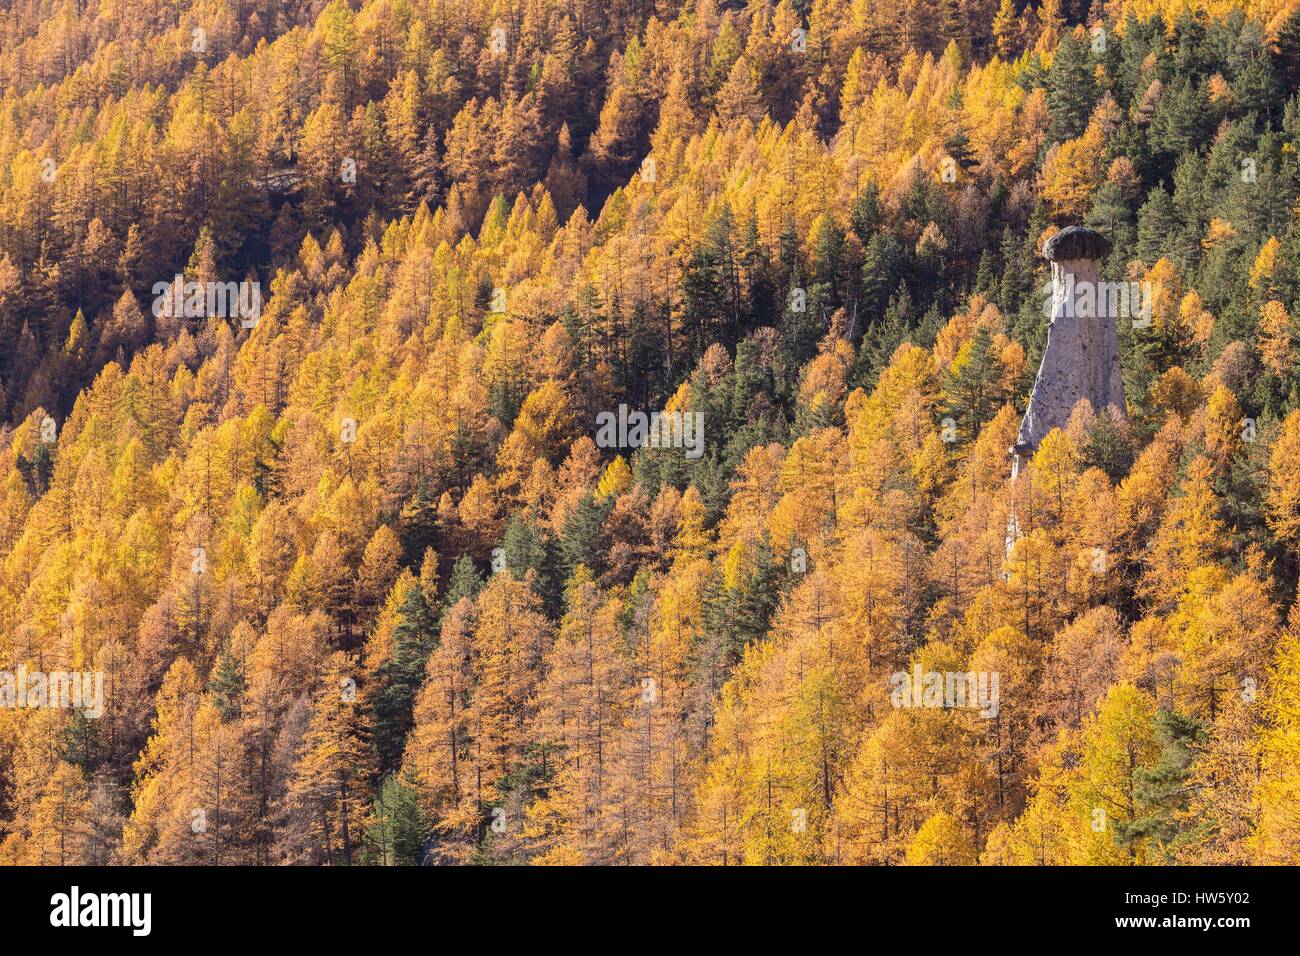 Francia, Hautes Alpes, la reserva natural regional de Queyras, Chateau Ville Vieille, Lady vistiendo también llamado chimenea de hadas en el corazón de un bosque de alerces (Larix decidua) Foto de stock